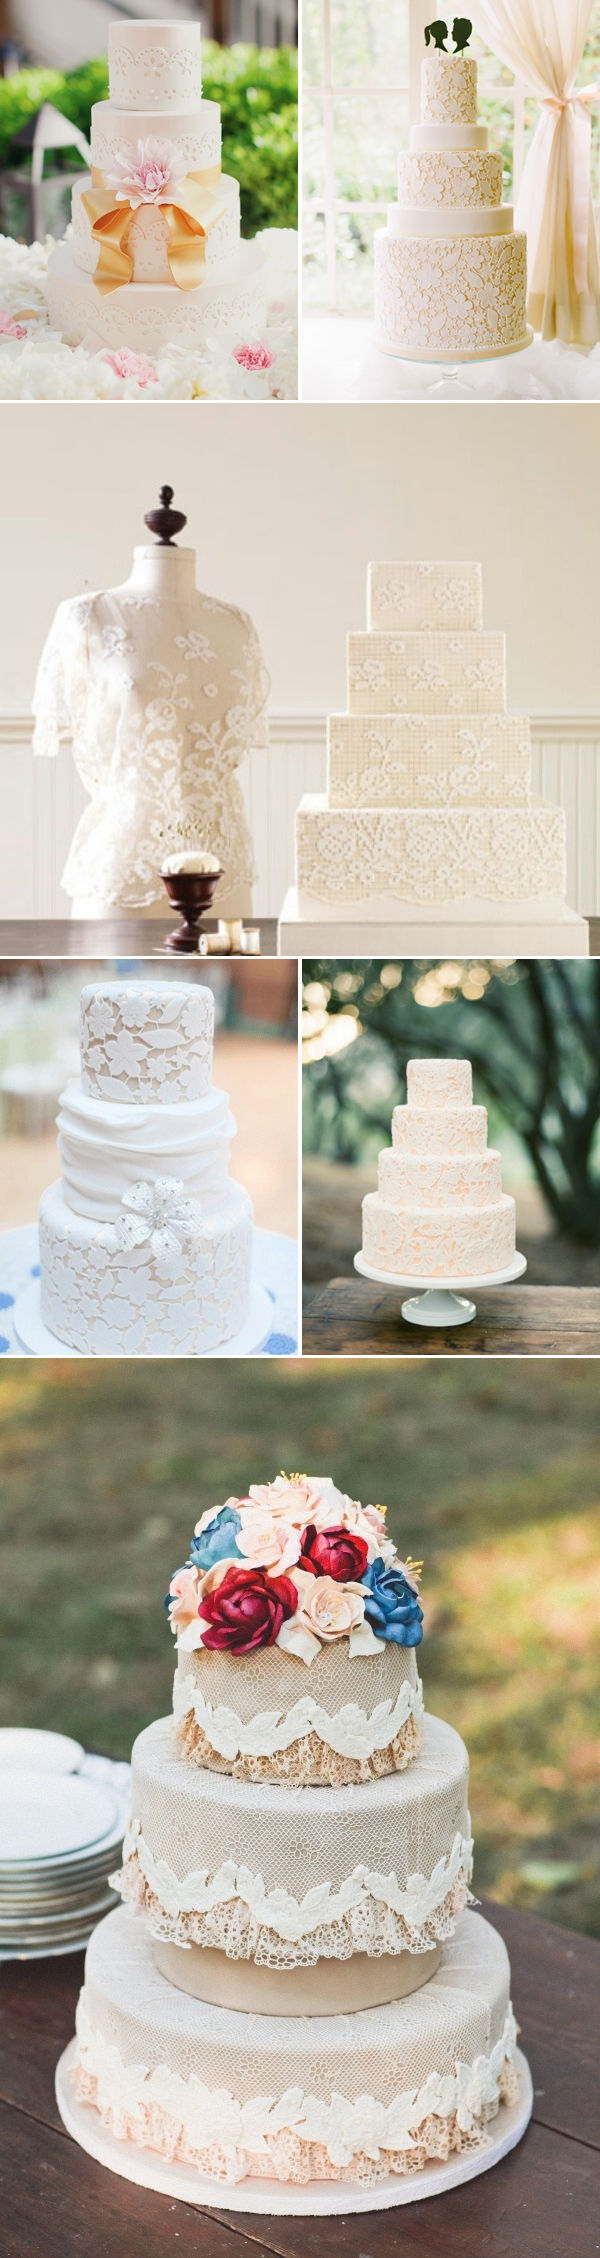 lace wedding cakes-white